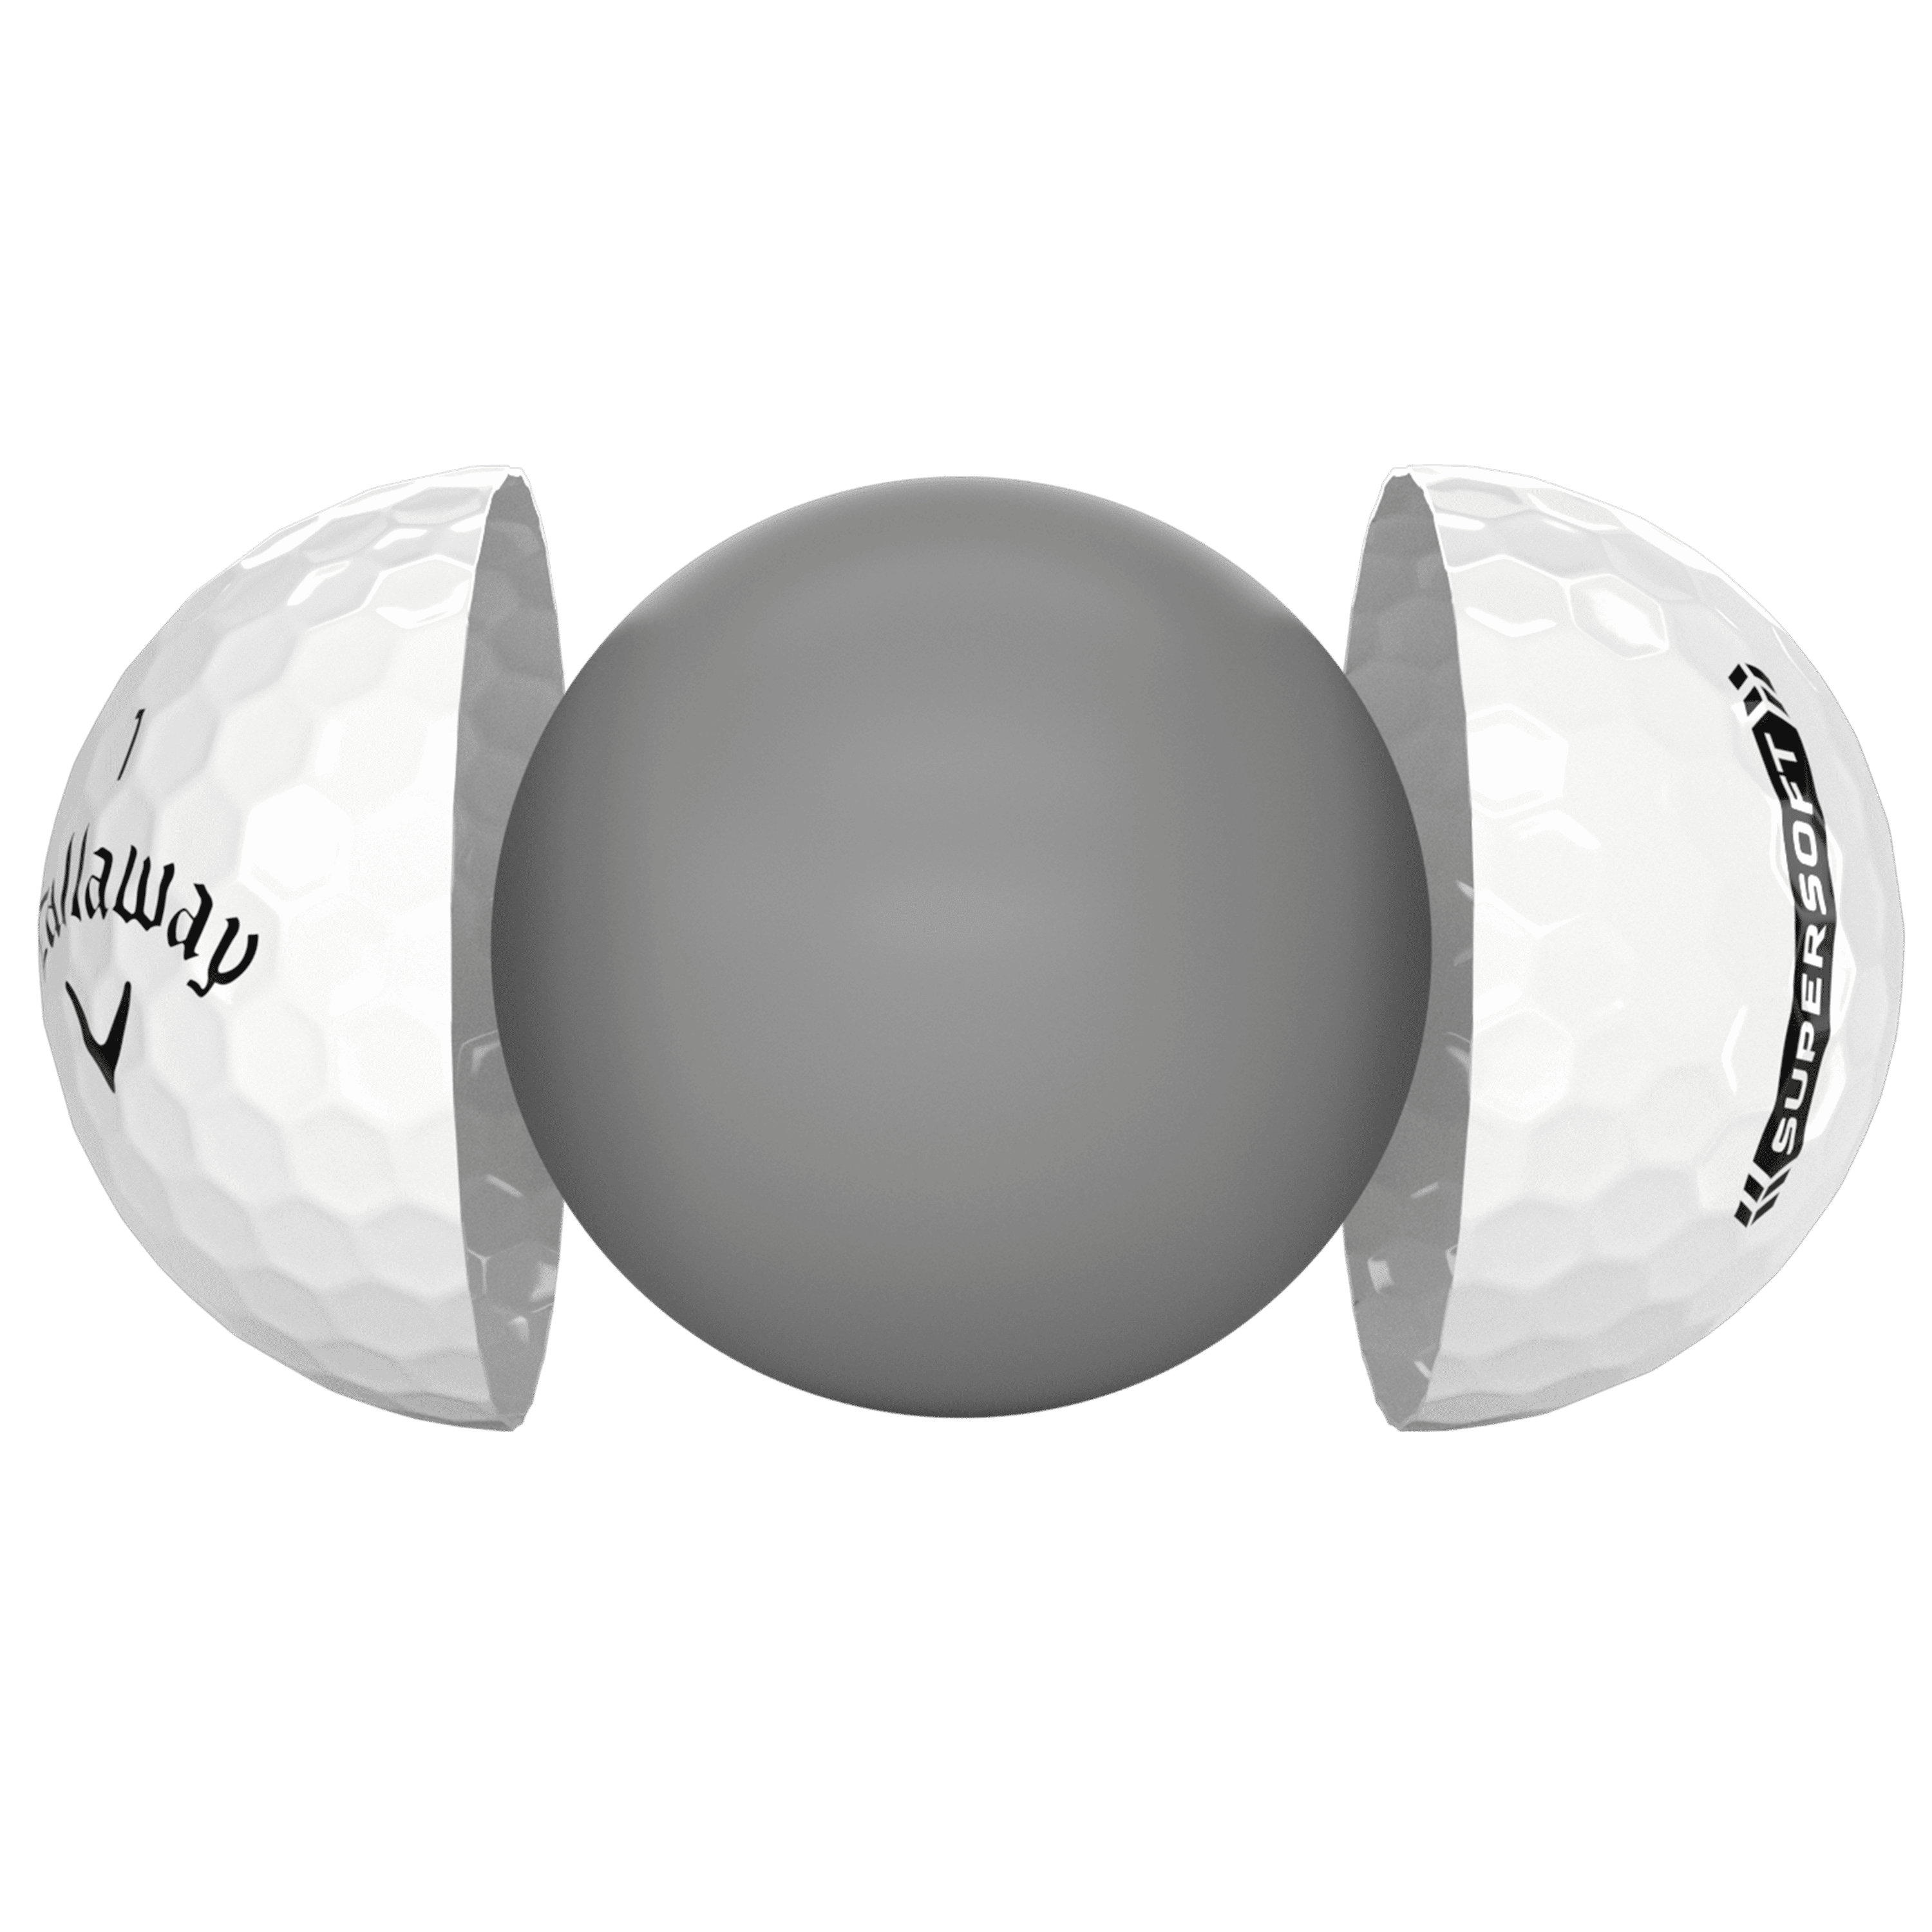 Callaway Supersoft White Golf Balls Technology